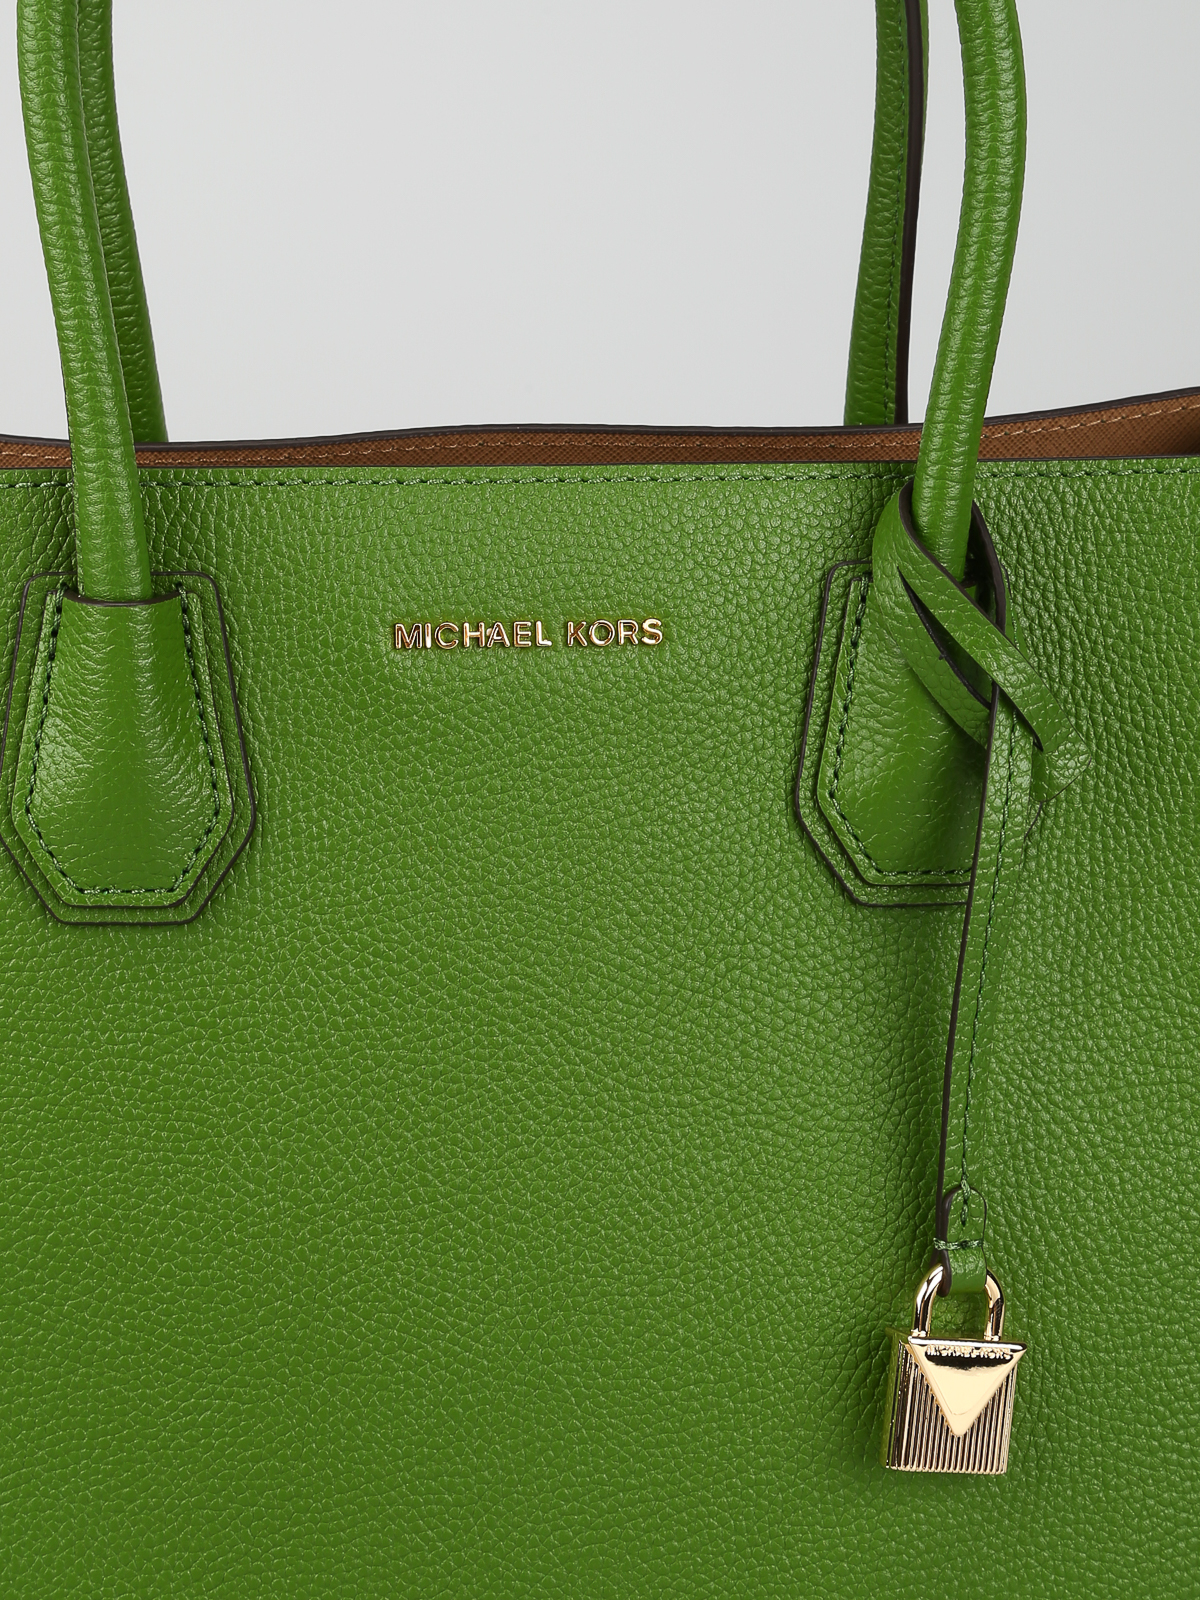 Michael Kors - Mercer Handbag - Green